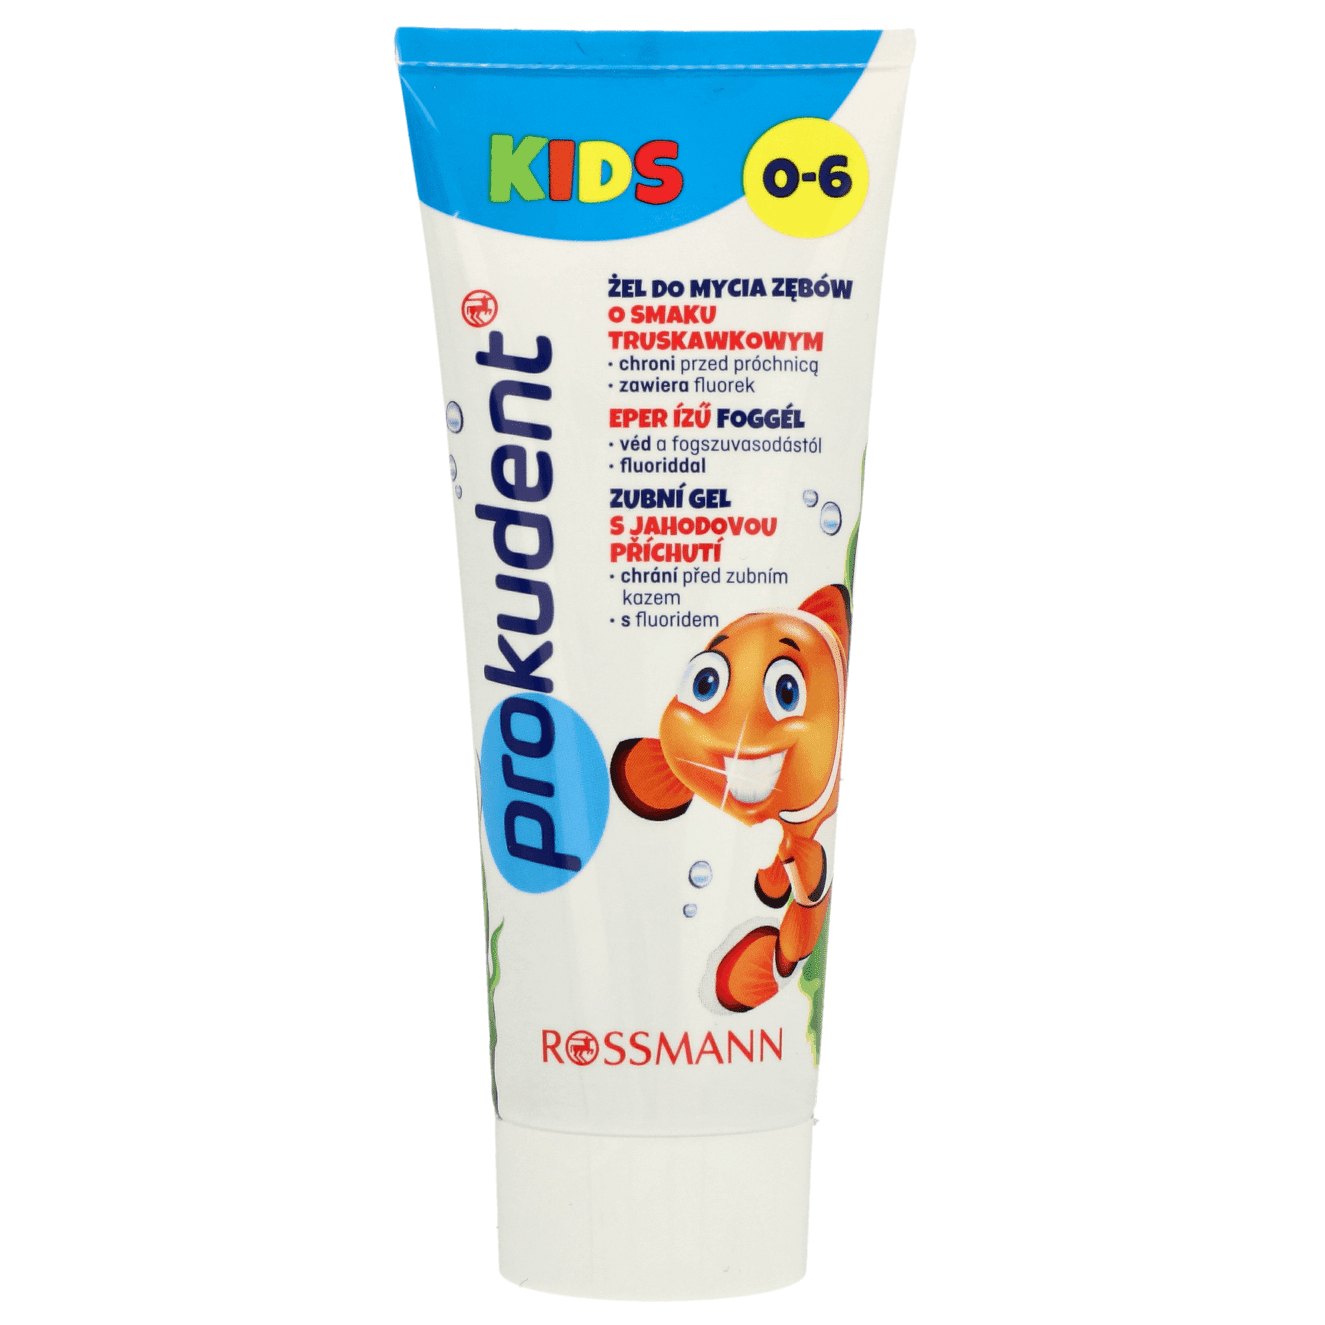 Prokudent Kids, żel do mycia zębów dla dzieci 0-6 lat, z fluorem 1000 ppm, Matka Aptekarka